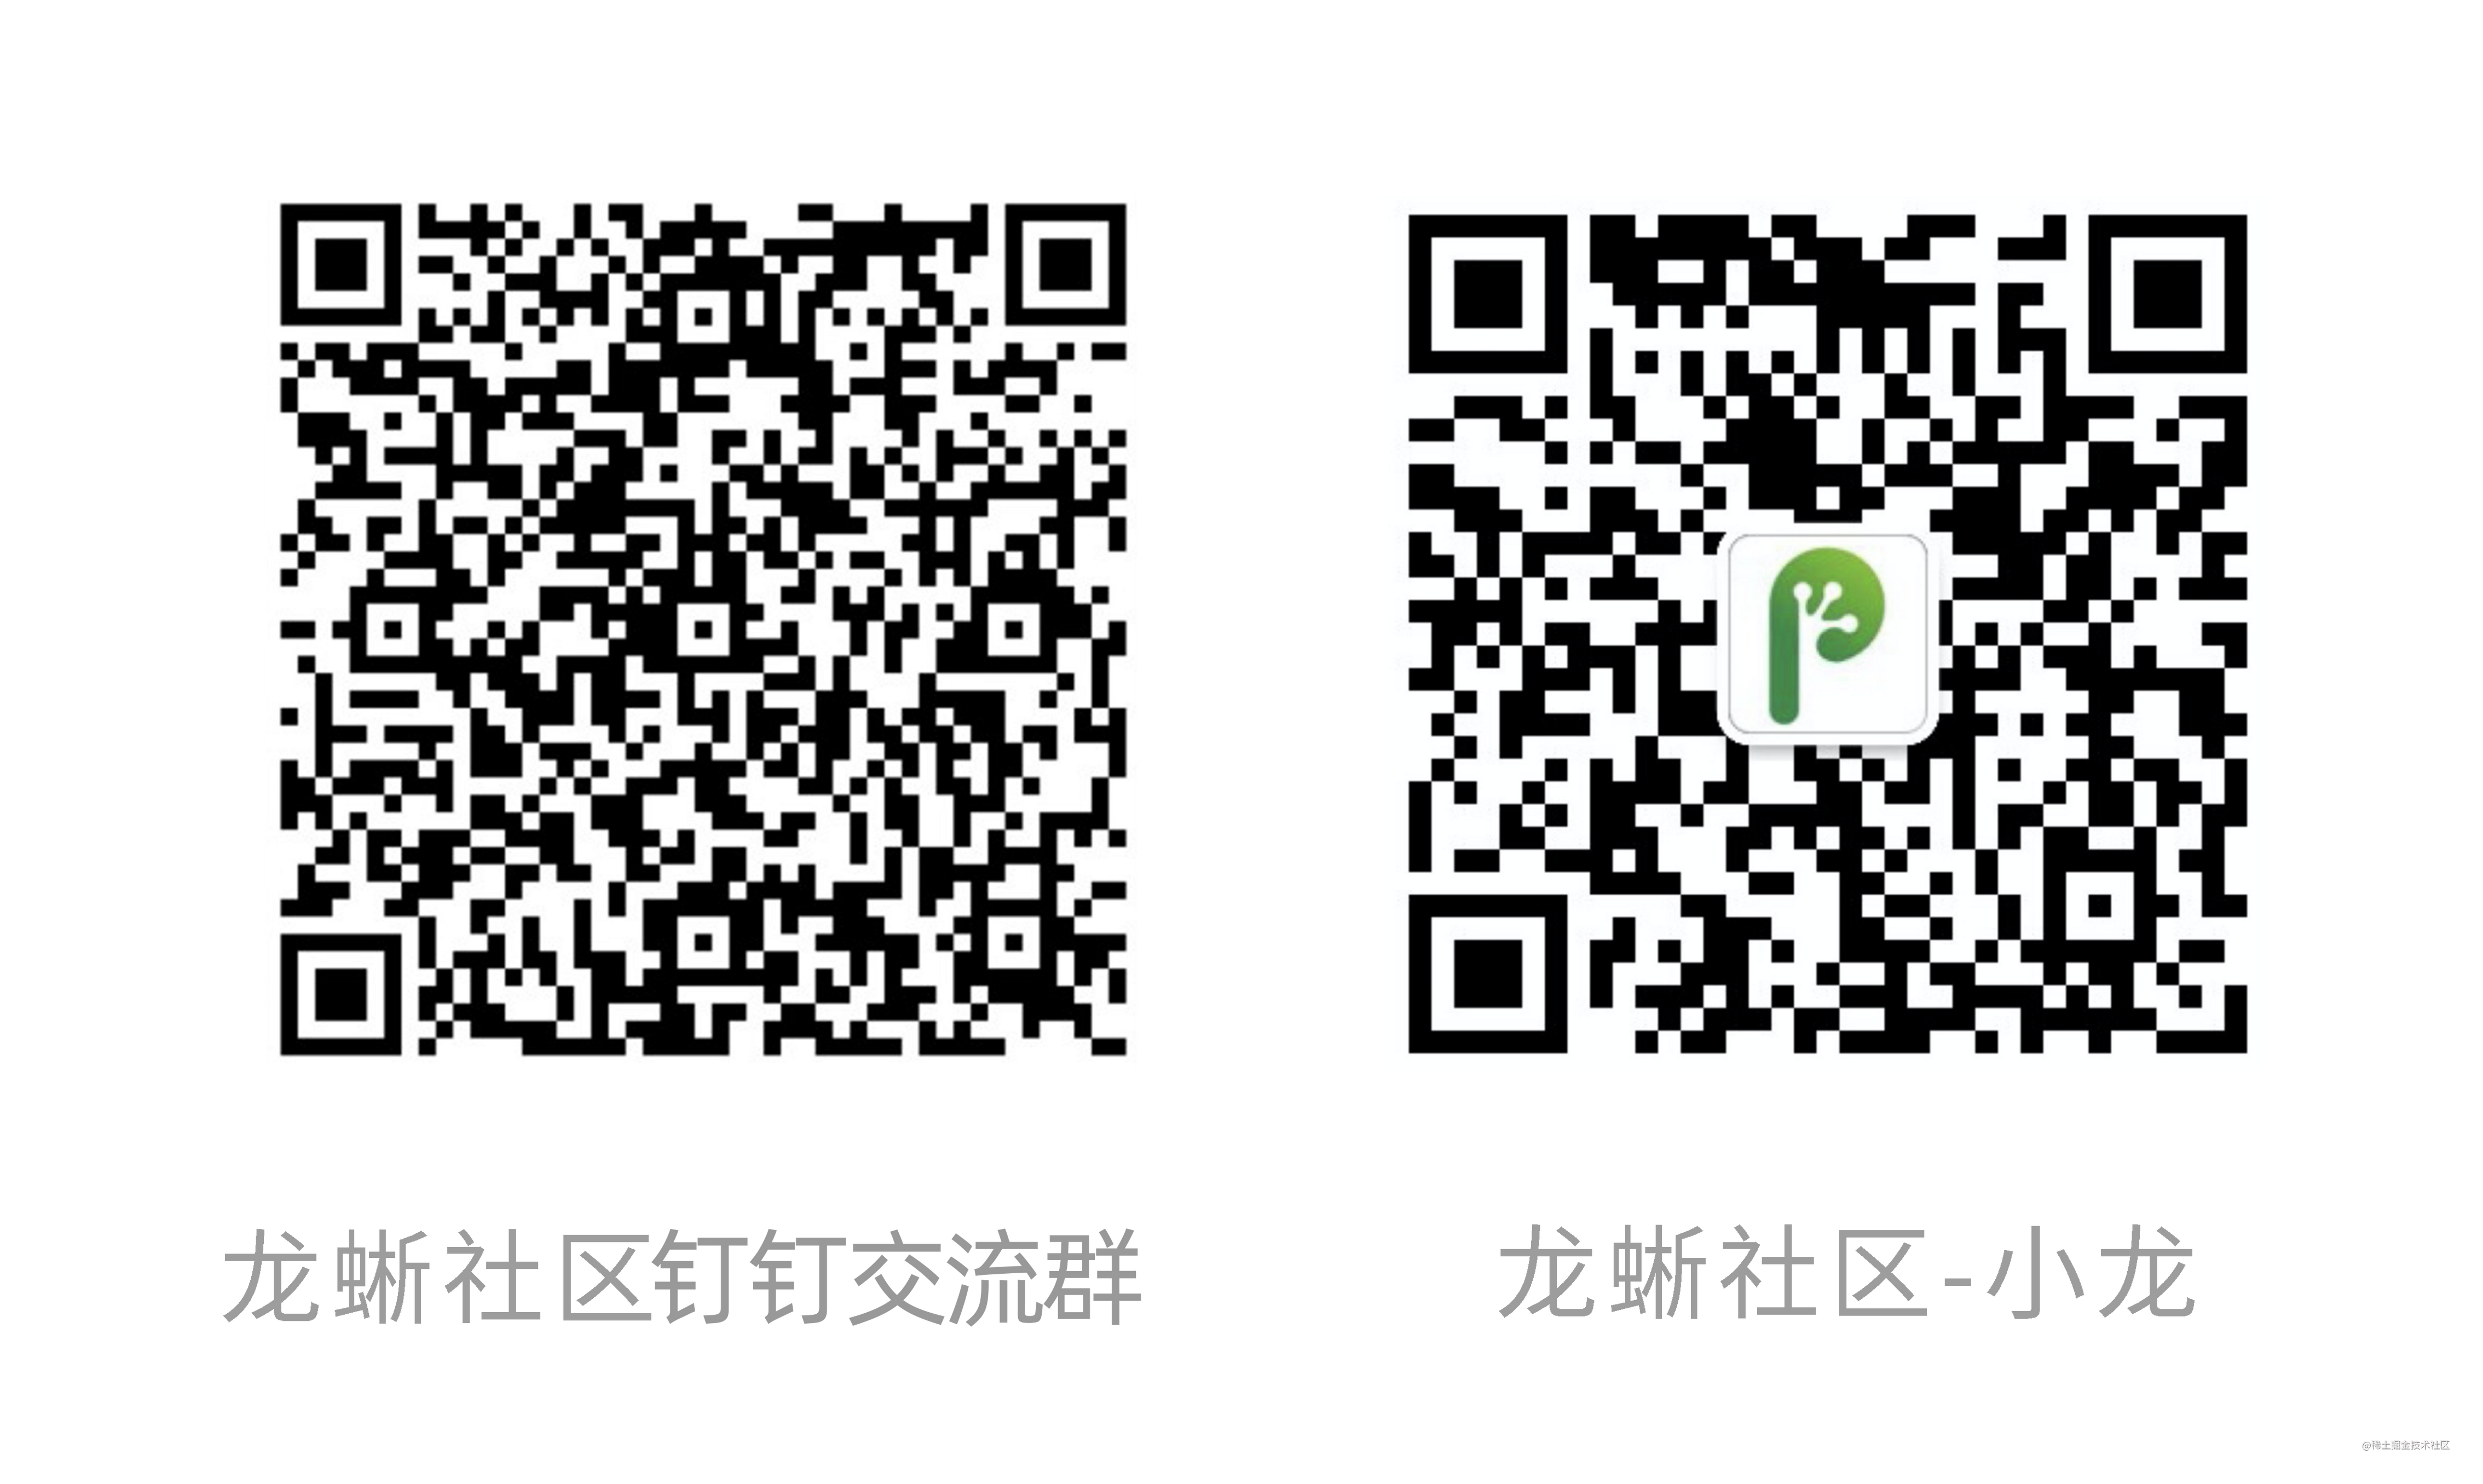 Conta Oficial e Grupo de Comunicação Xiaolong.png